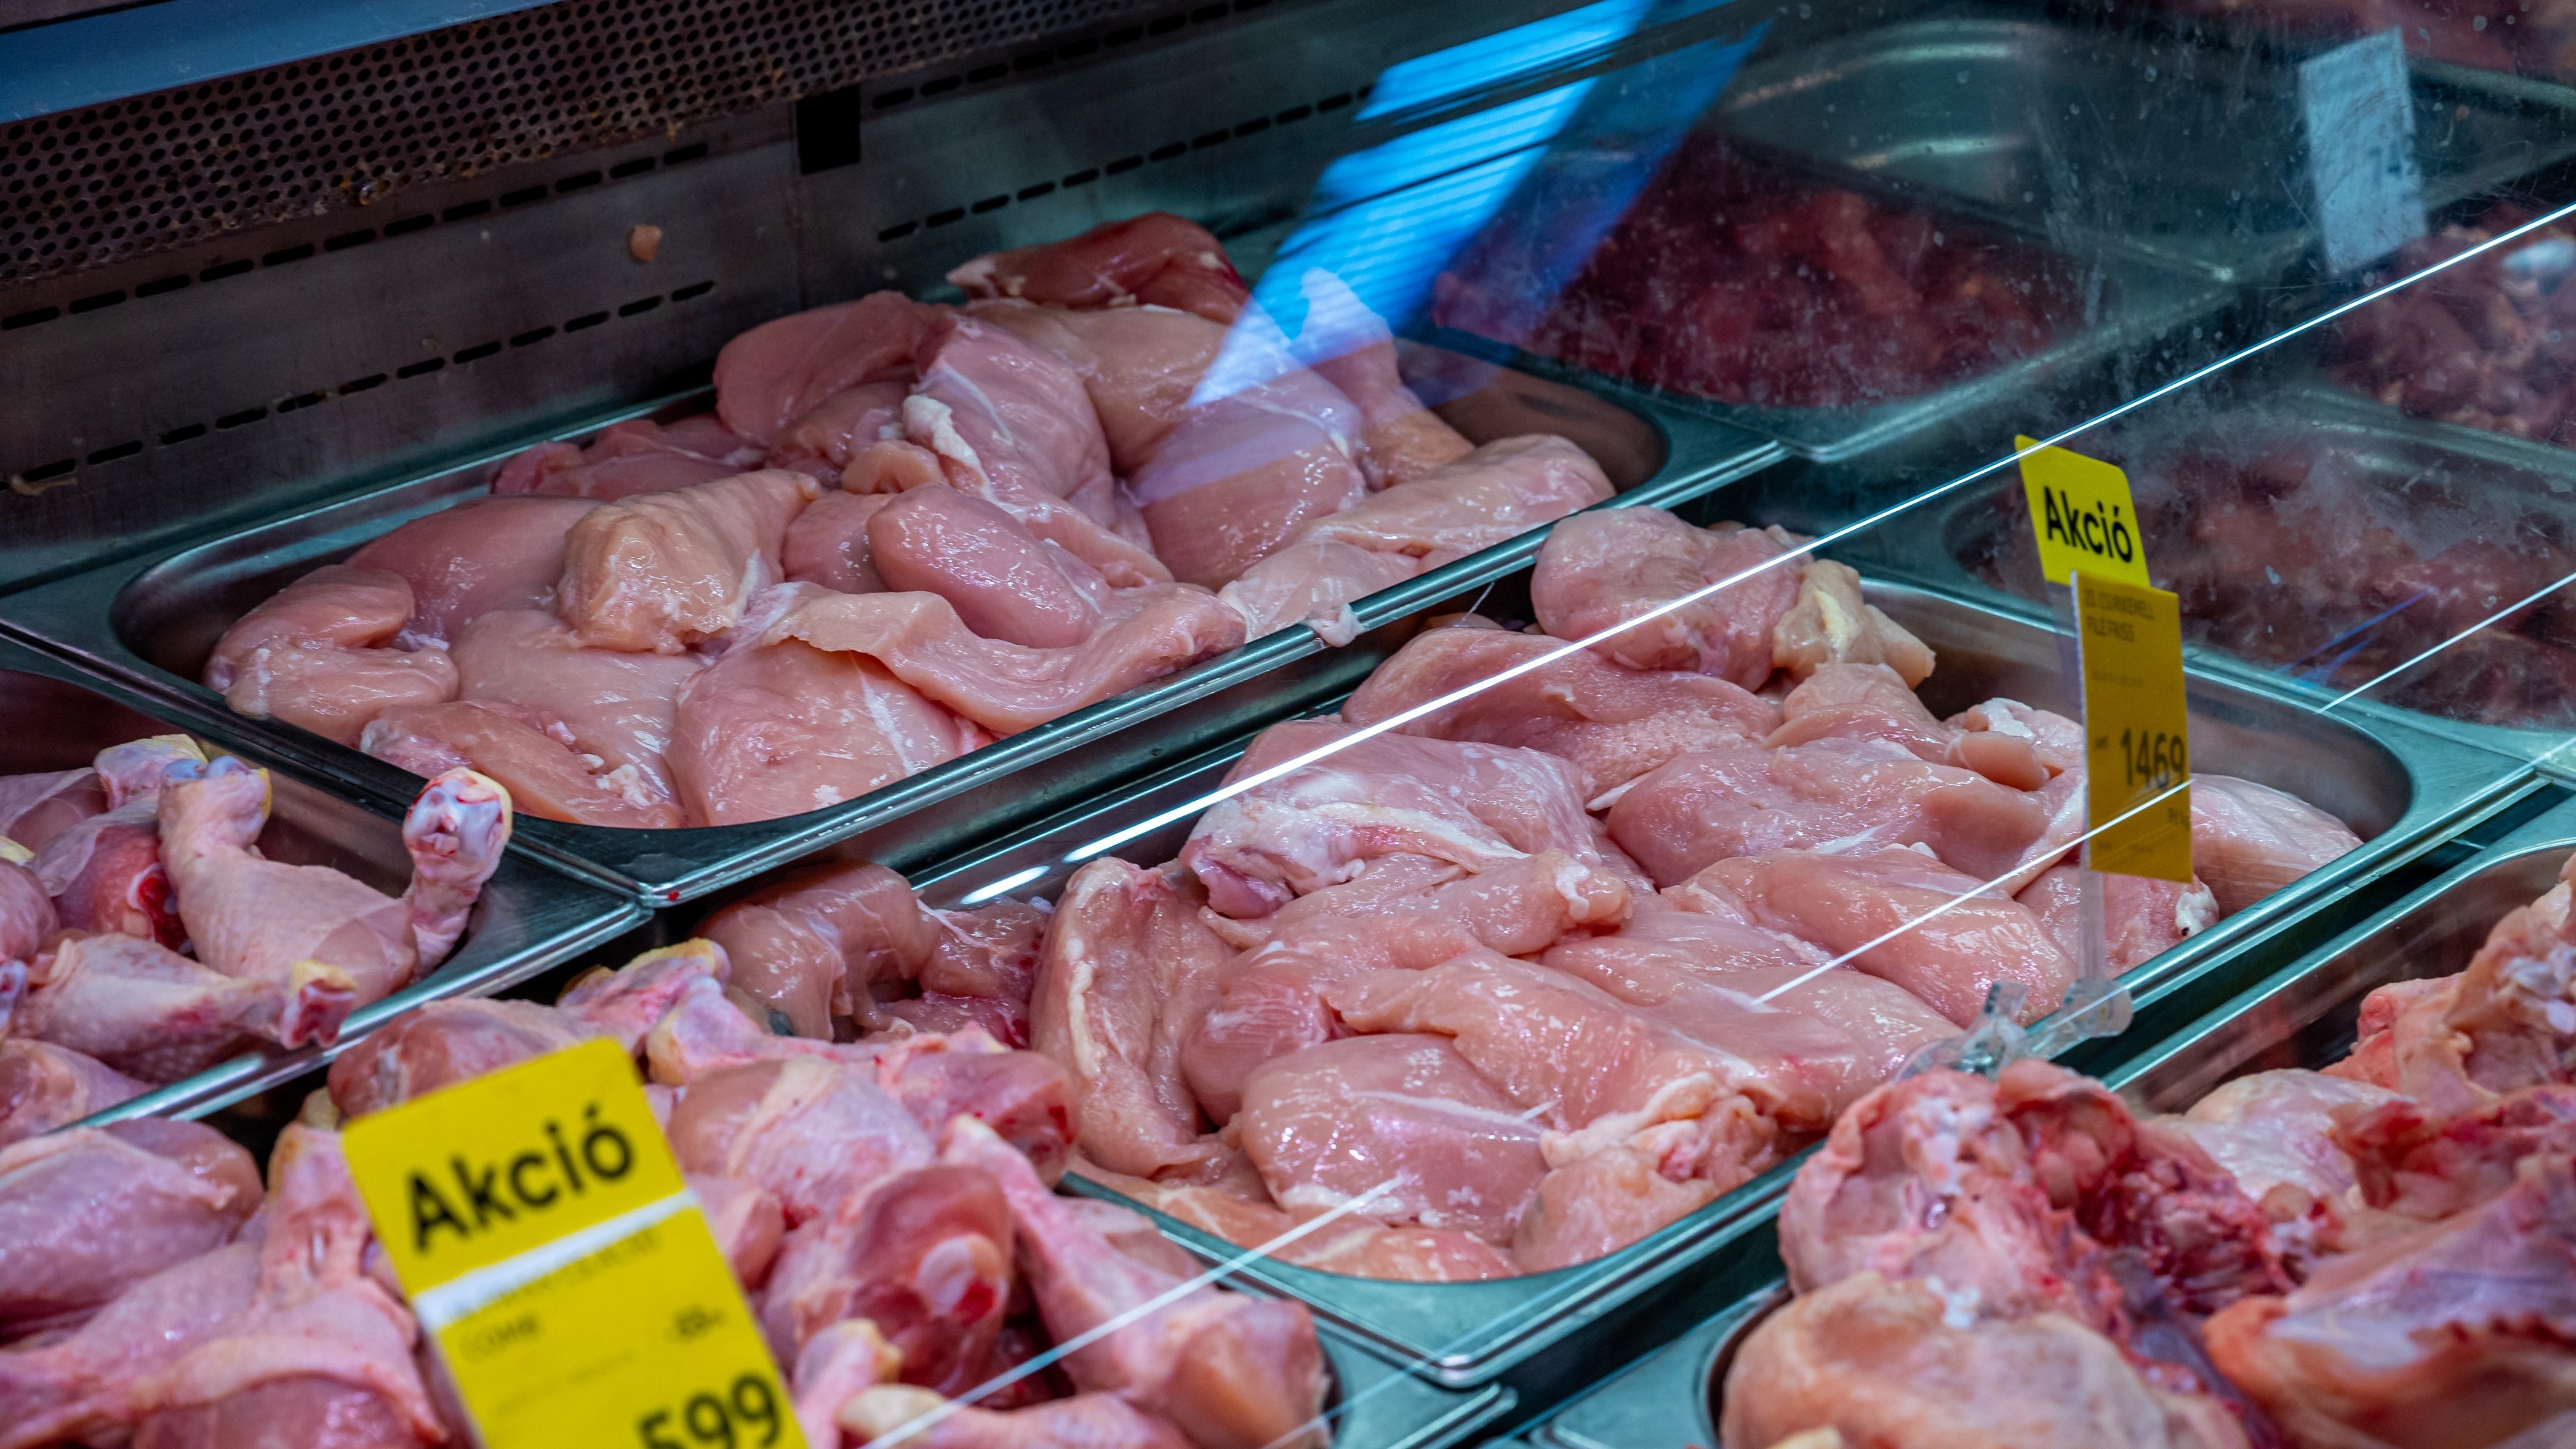 2000 forint is lehet a csirkemell kilója, ha megszűnik májustól az élelmiszerárstop